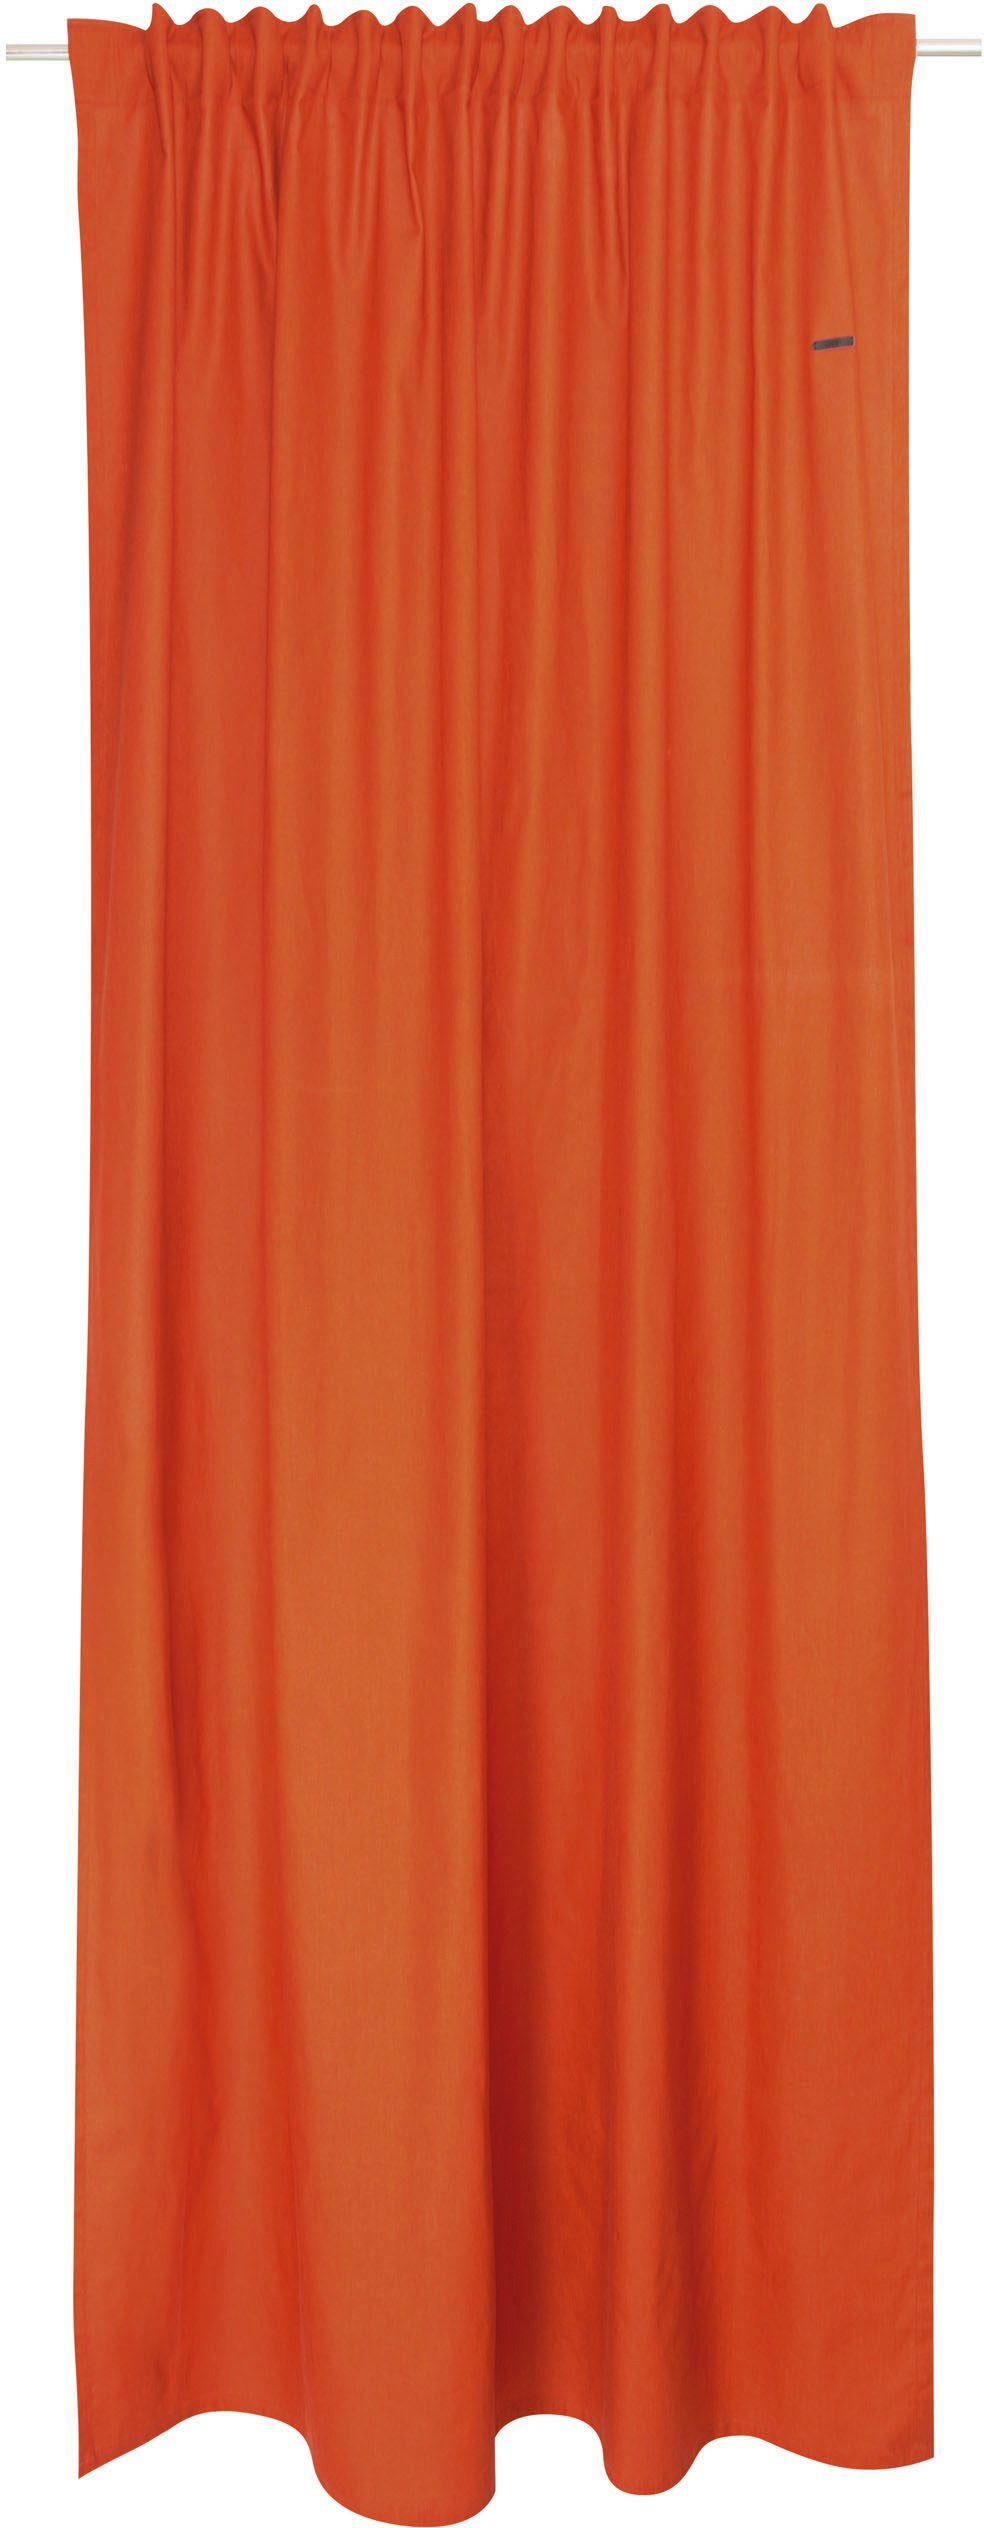 St), (1 nachhaltiger Baumwolle, bronzefarben/zimt/orange Schlaufen blickdicht blickdicht, Neo, Esprit, Vorhang verdeckte aus